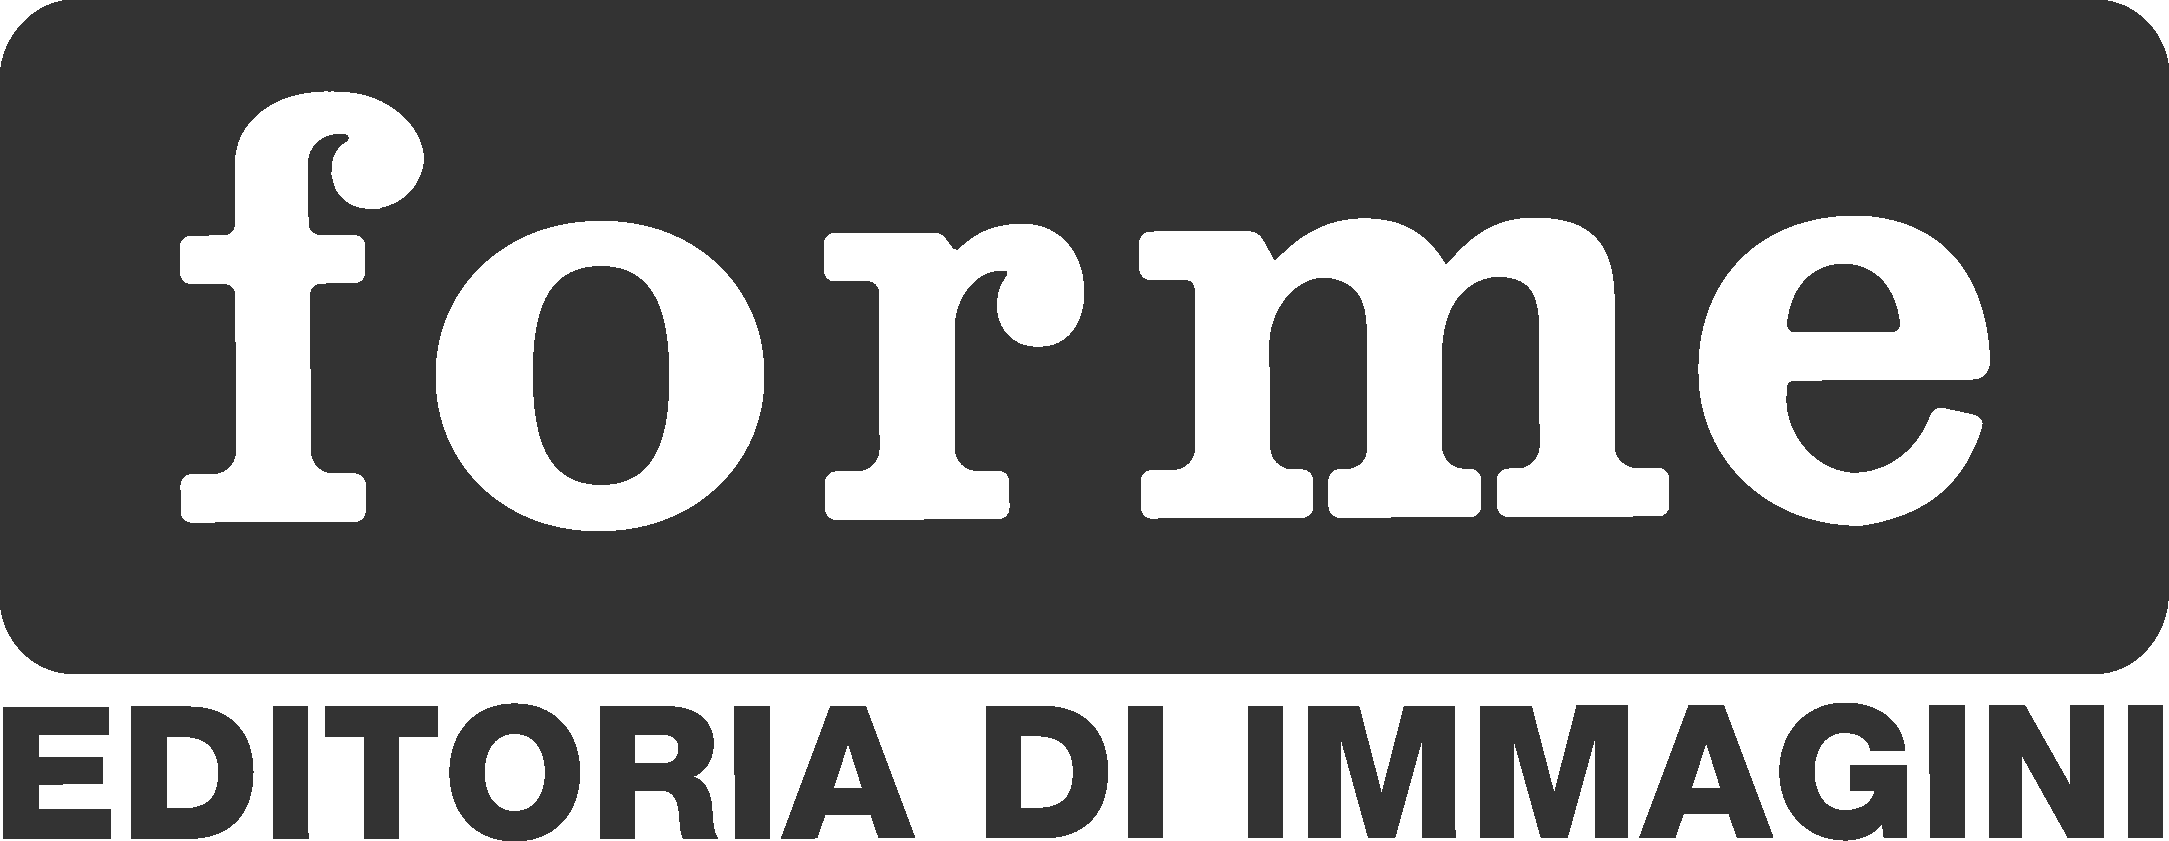 Forme srl - merchandising e gadget a Parma